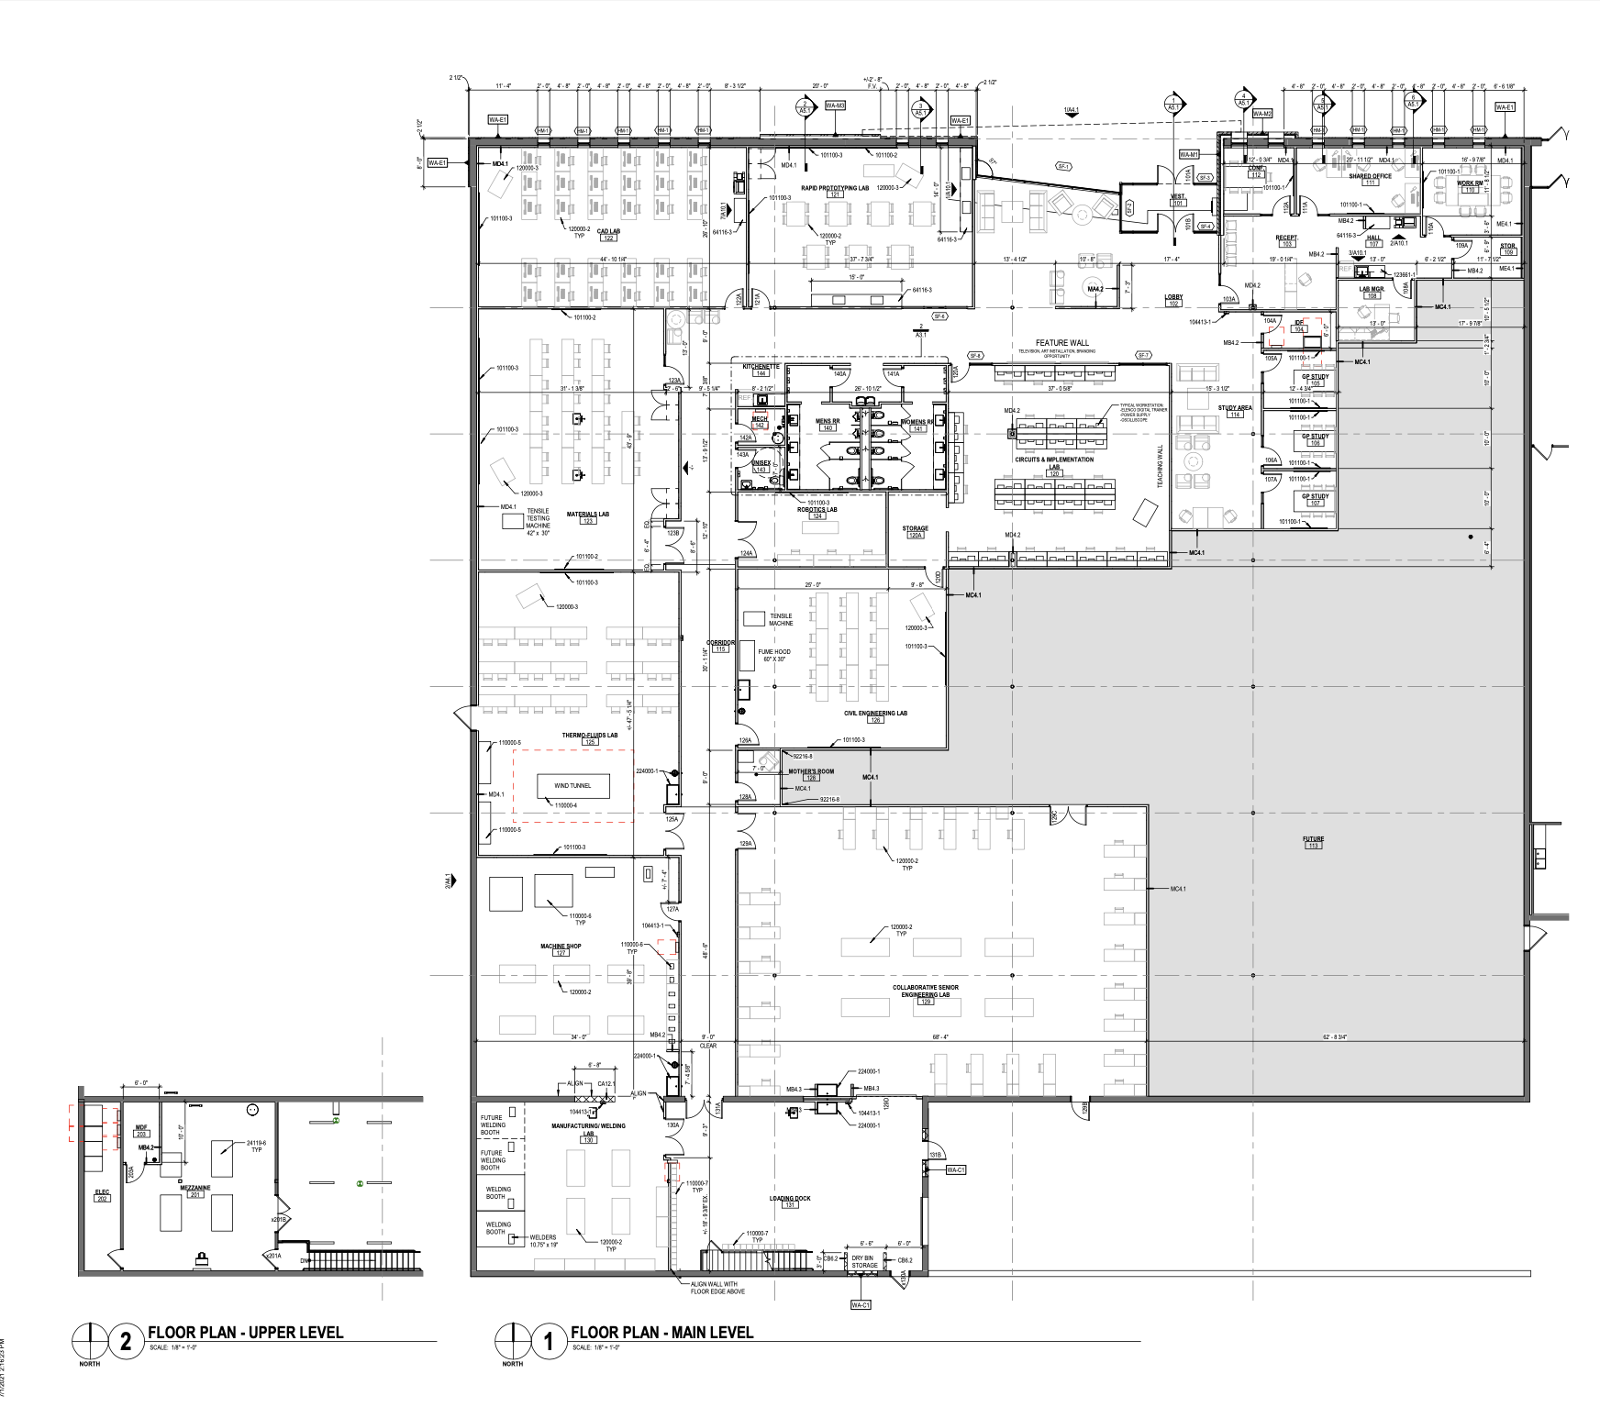 engineering building proposed floor plan